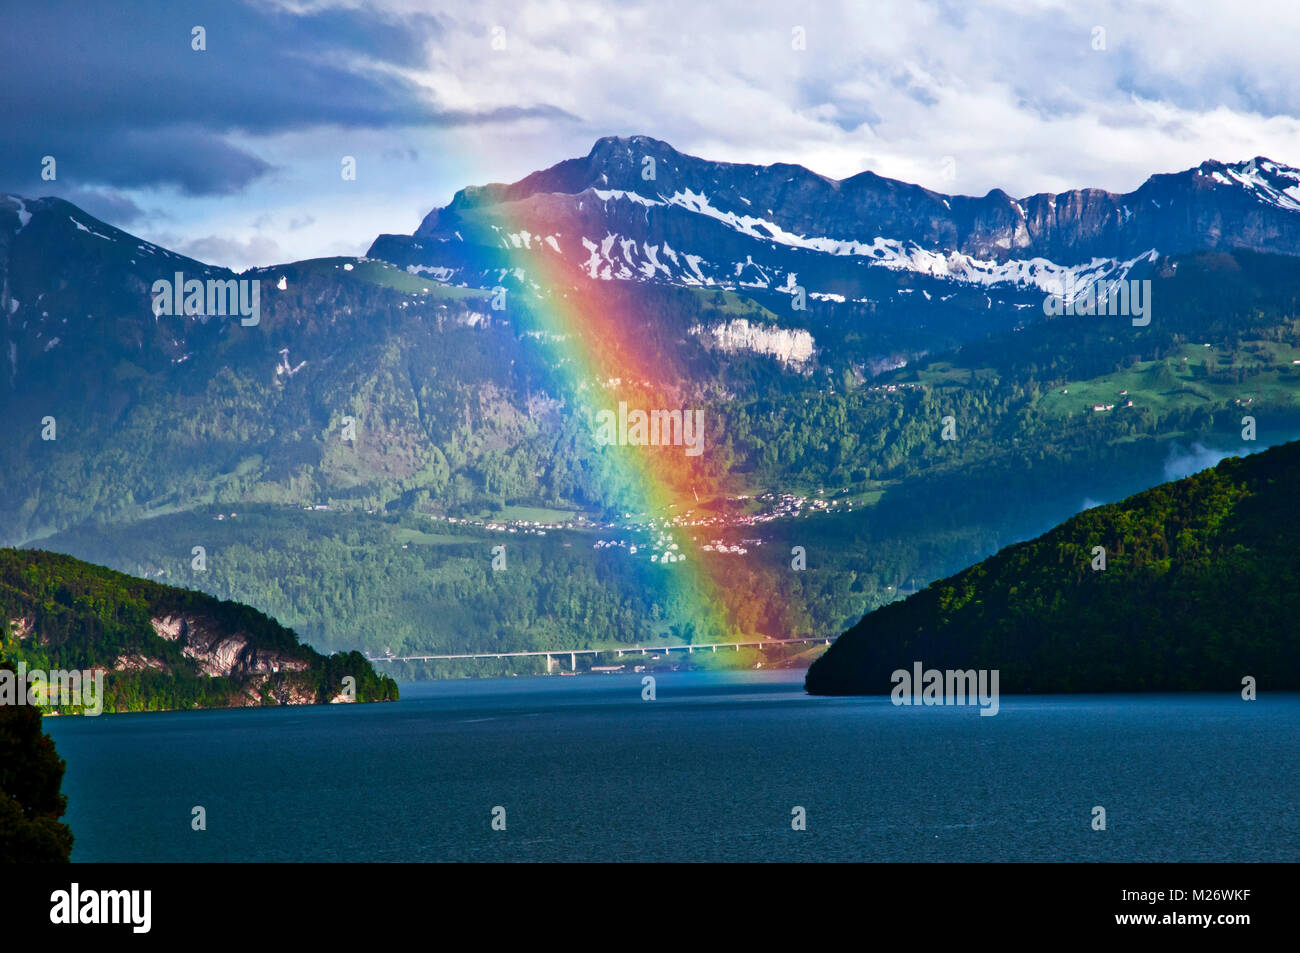 Schöne riesige Regenbogen über den Vierwaldstättersee und die Alpen,  Weggis, Schweiz. Schweiz, Europa Stockfotografie - Alamy